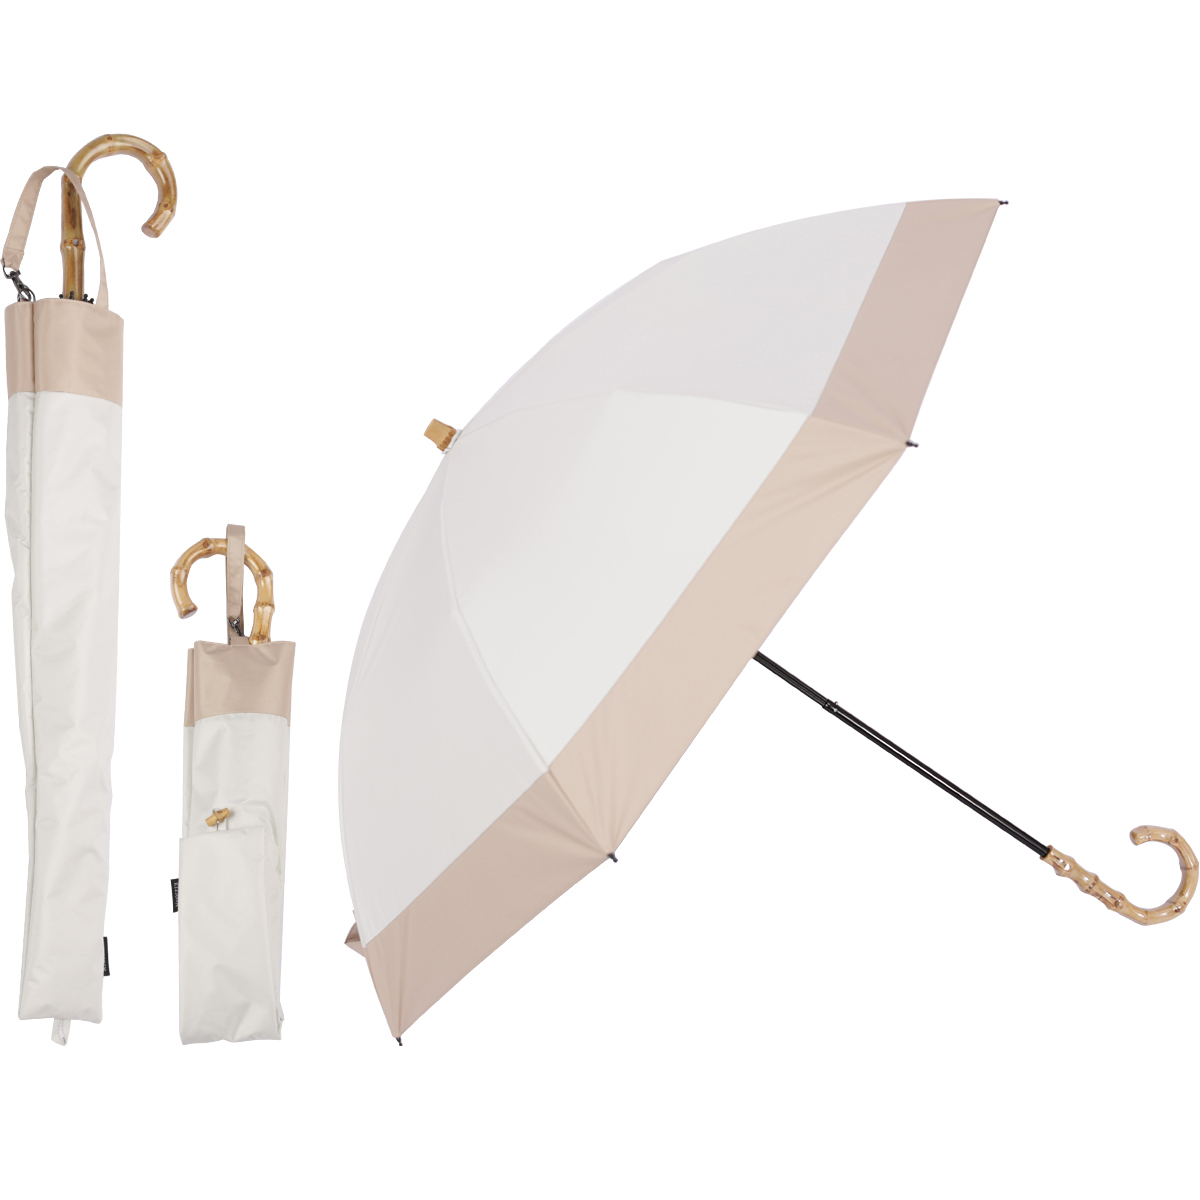 日傘 完全遮光 折りたたみ傘 晴雨兼用 レディース 二段式 折りたたみ